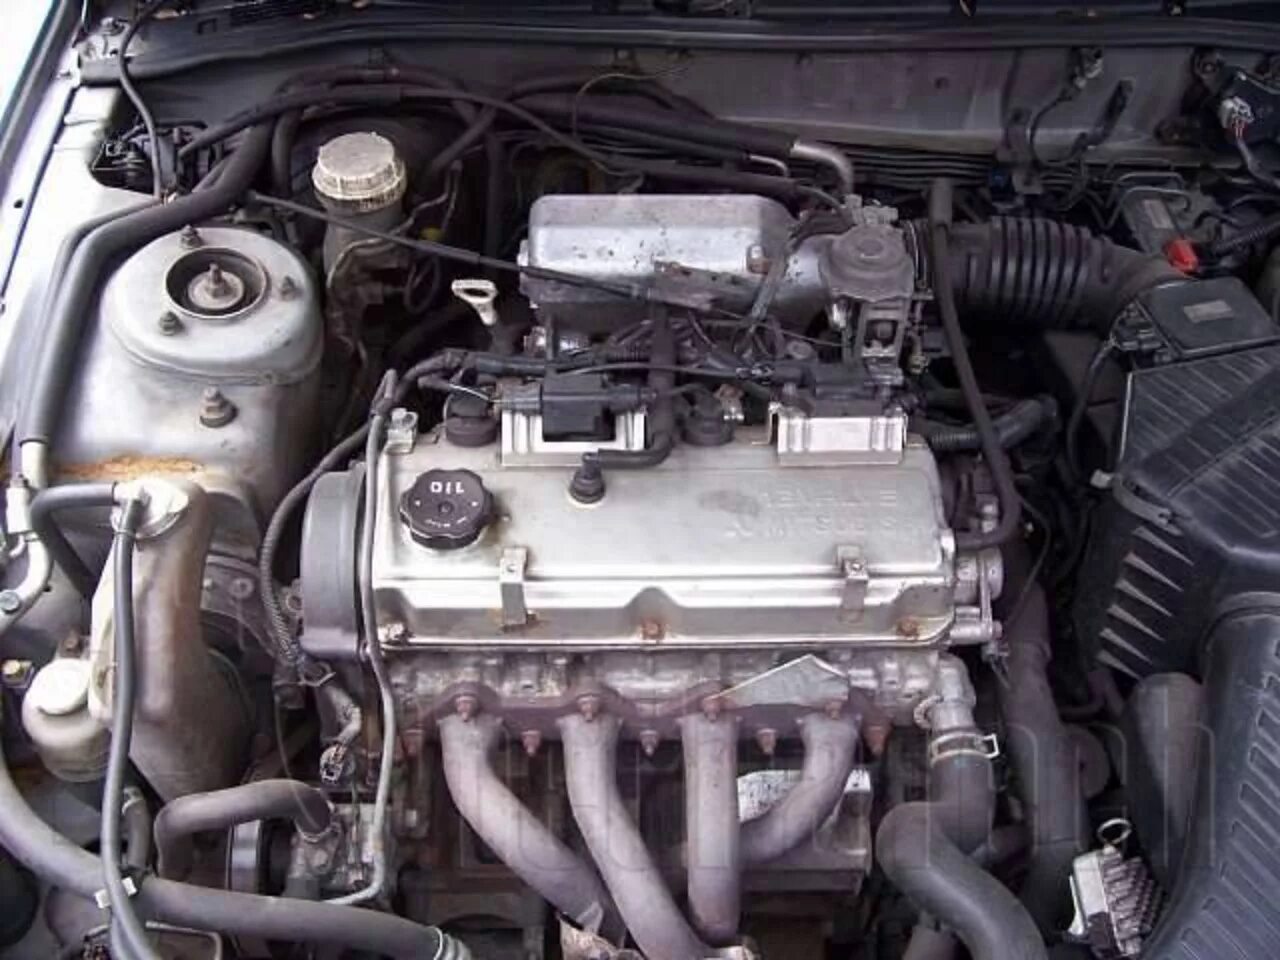 Мотор Mitsubishi Galant g 4 63. Двигатель 4g63 Mitsubishi Galant. Мотор Митсубиси Галант 2.4. Двигатель 4g63 Мицубиси 2.4.